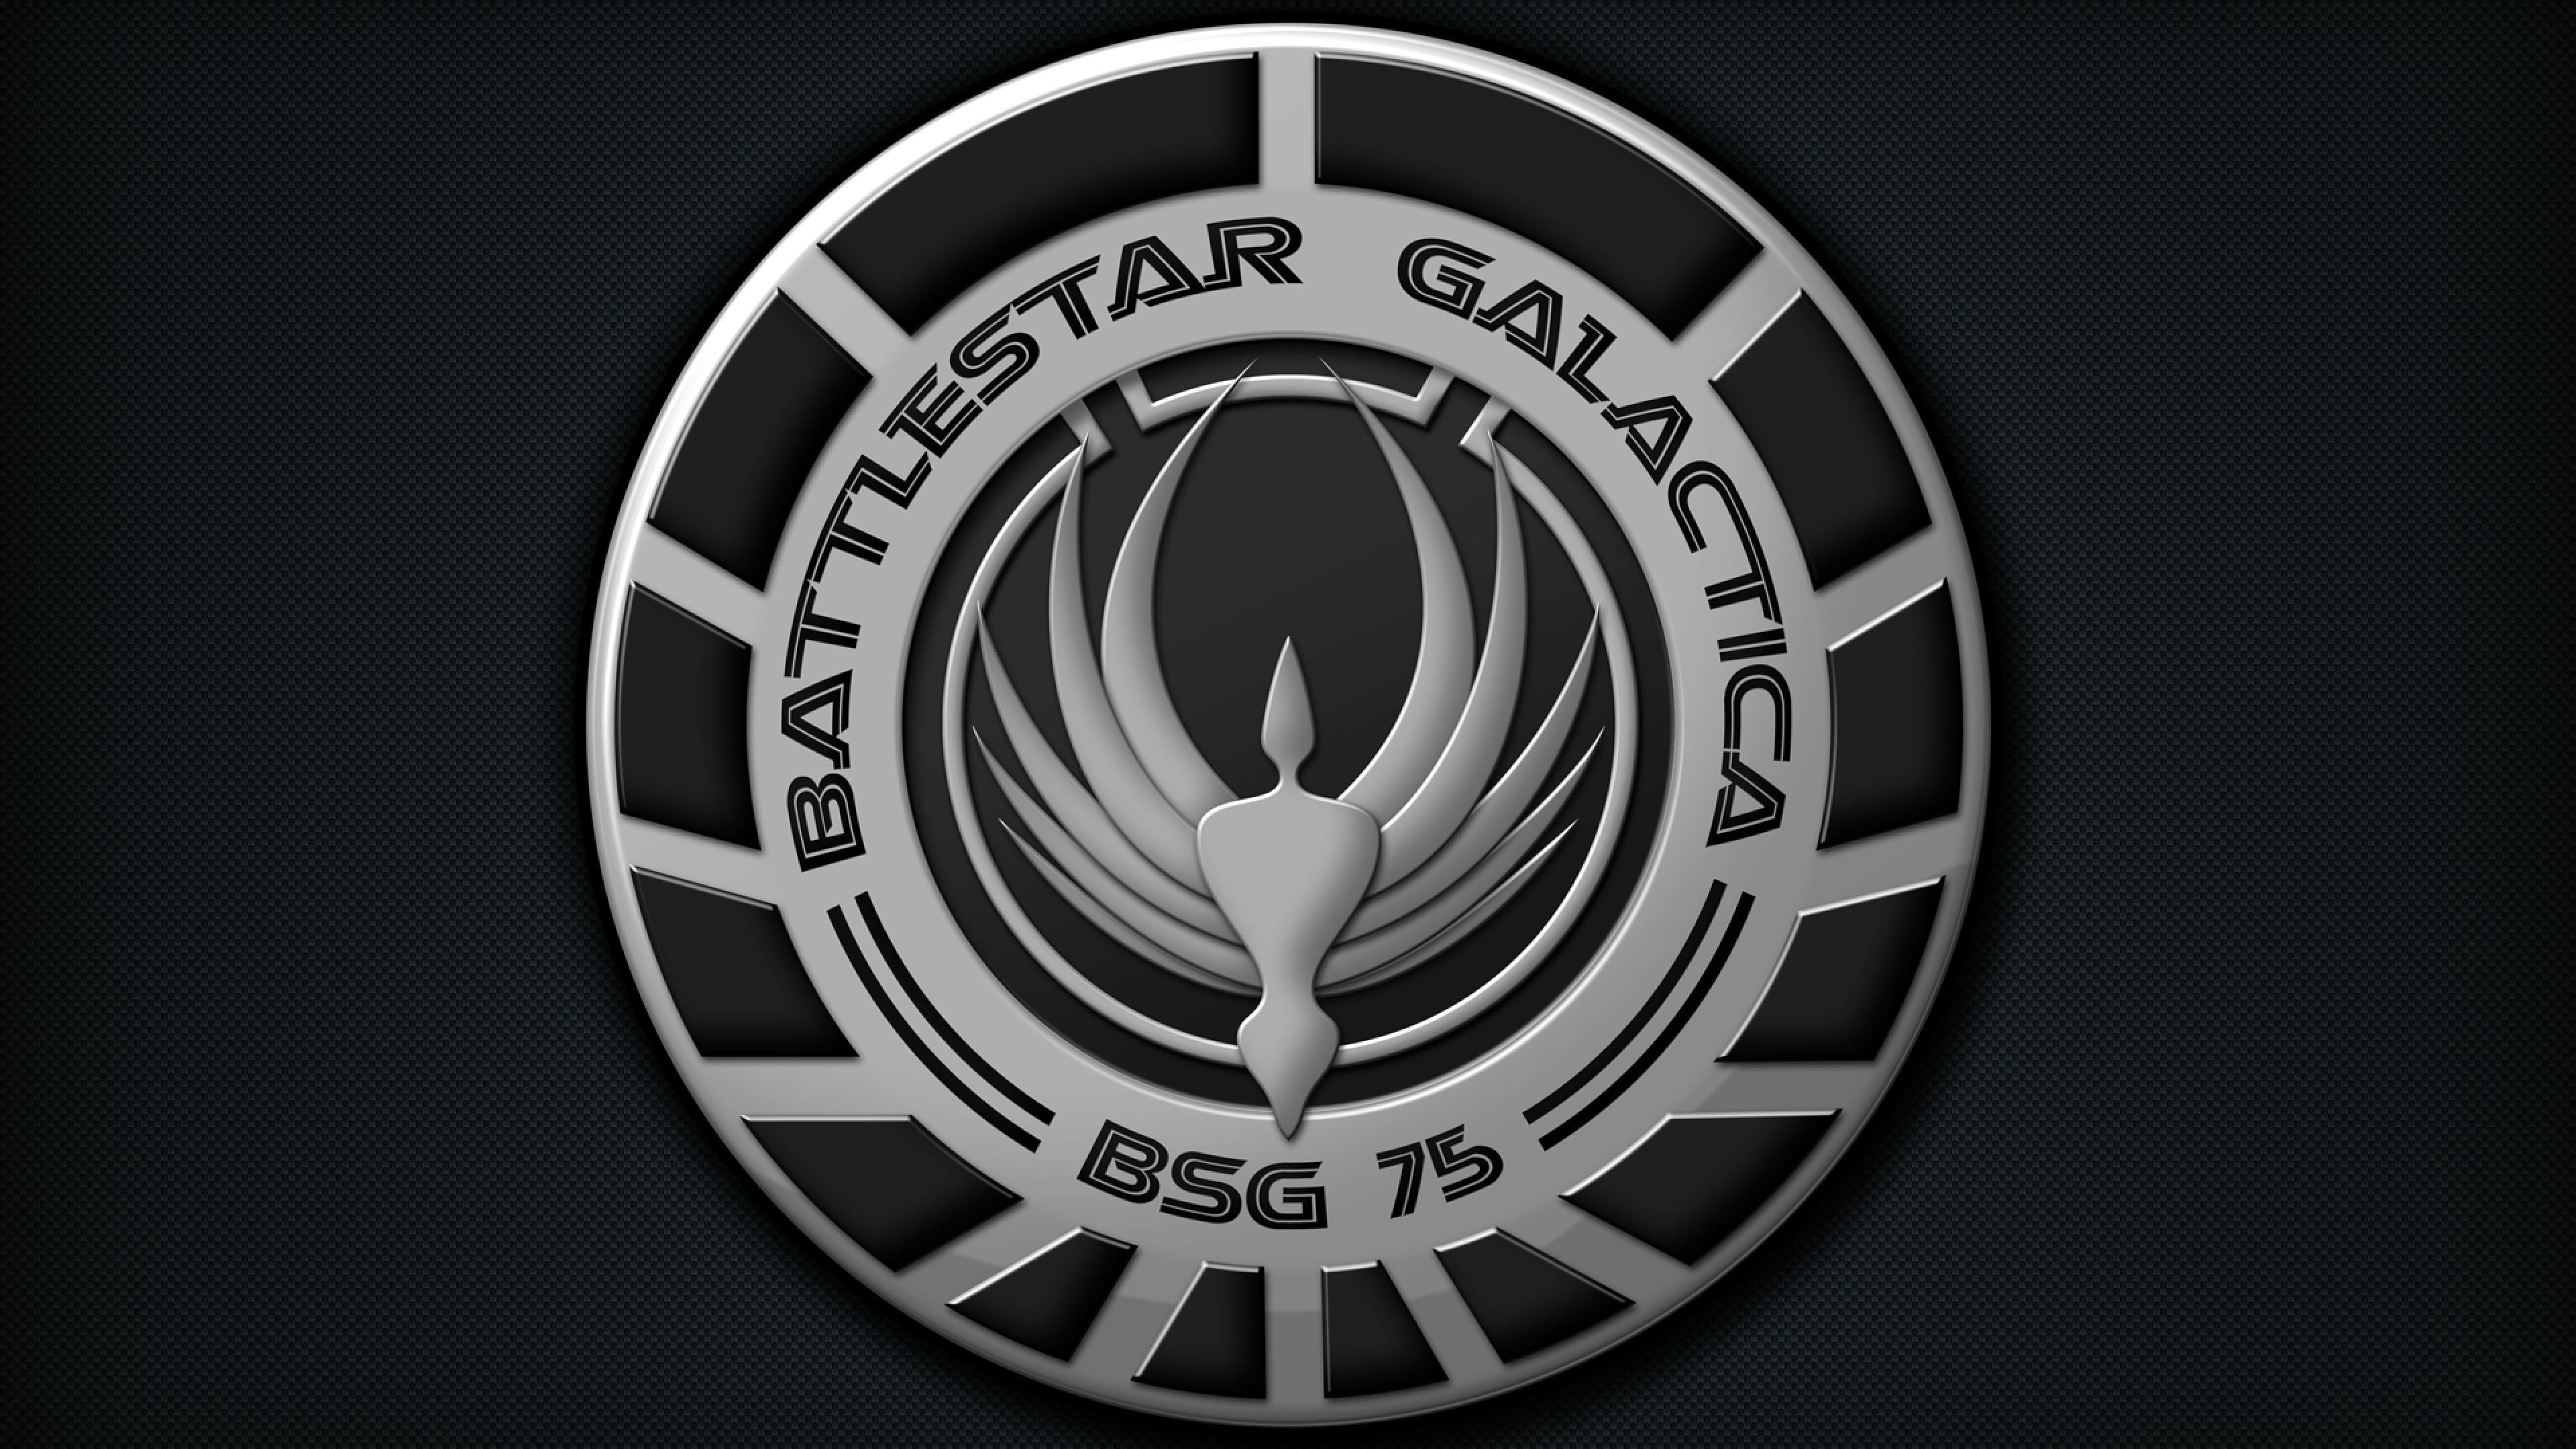 Battlestar Galactica, Logos insignia, Star Trek, 3840x2160 4K Desktop